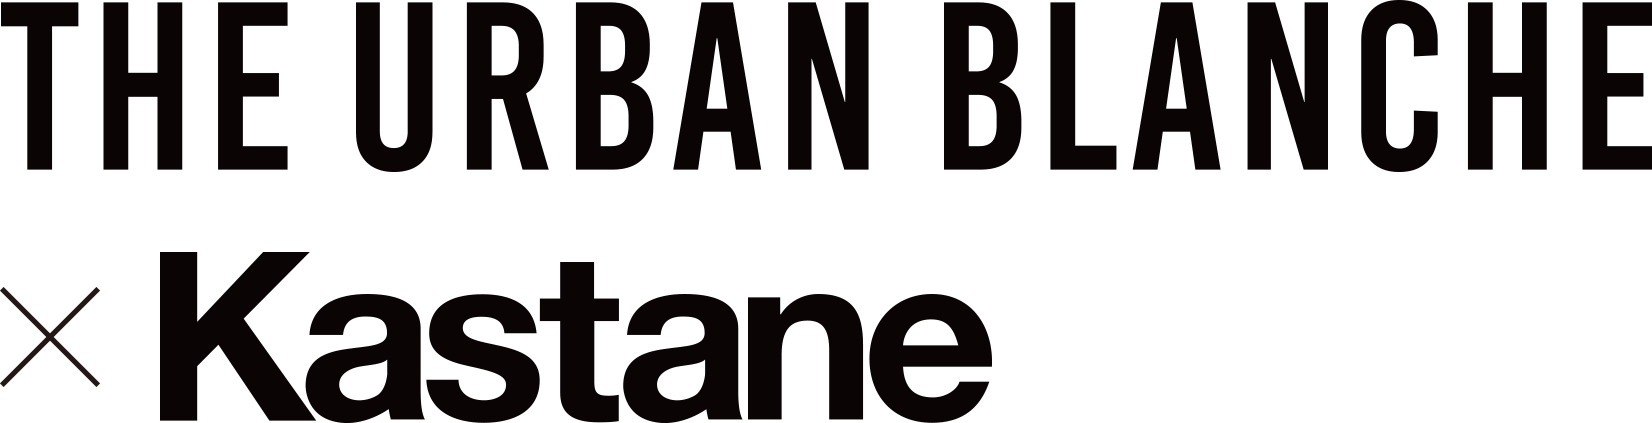 THE URBAN BLANCHE × Kastane